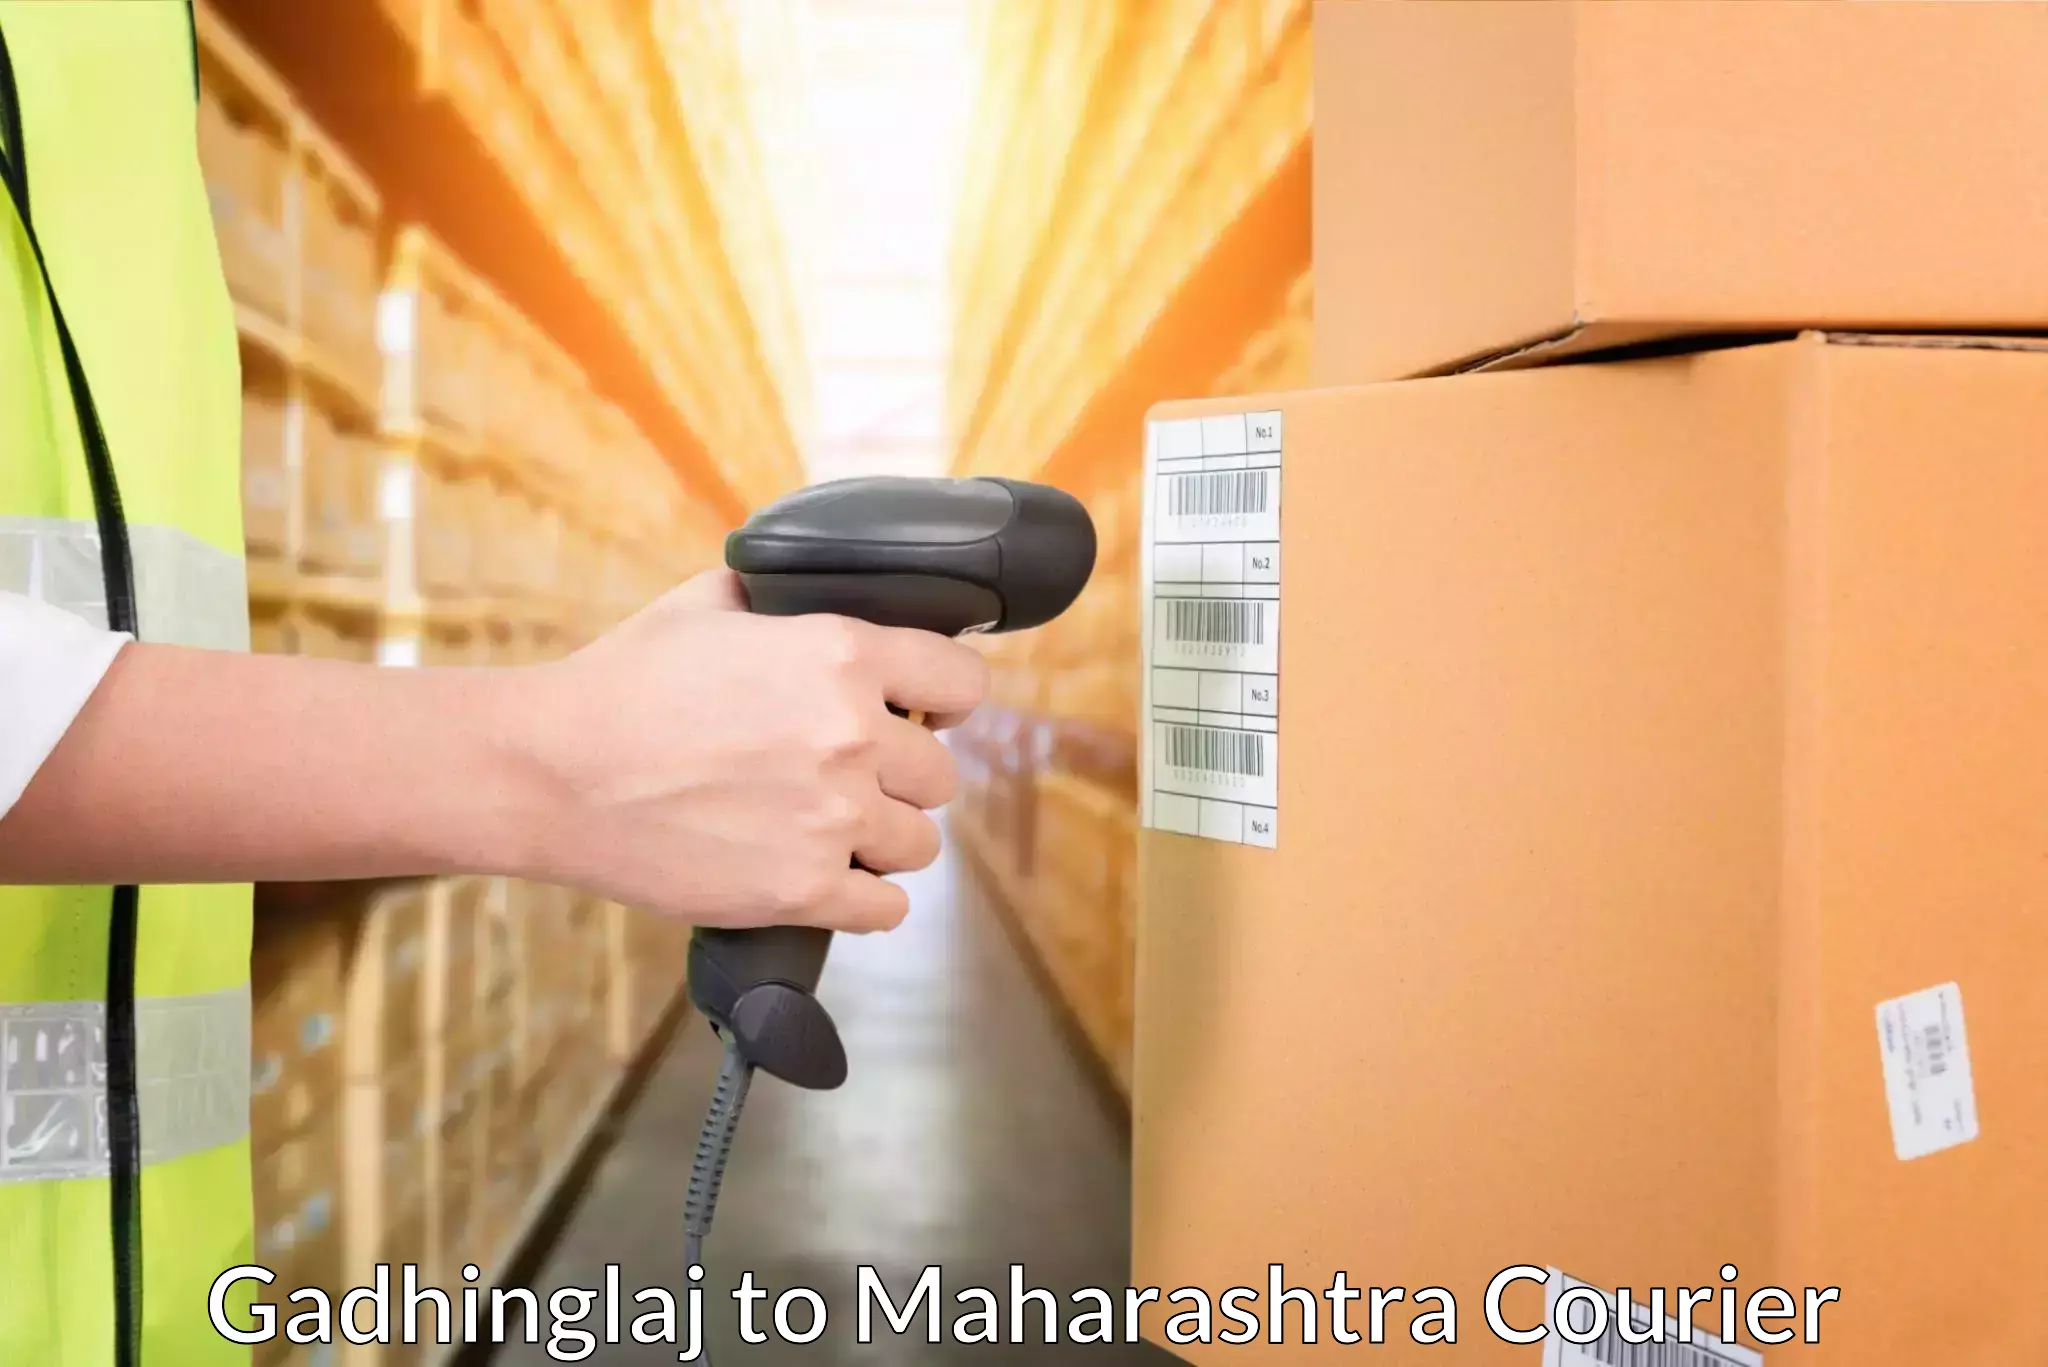 Customer-oriented courier services Gadhinglaj to Gadhinglaj